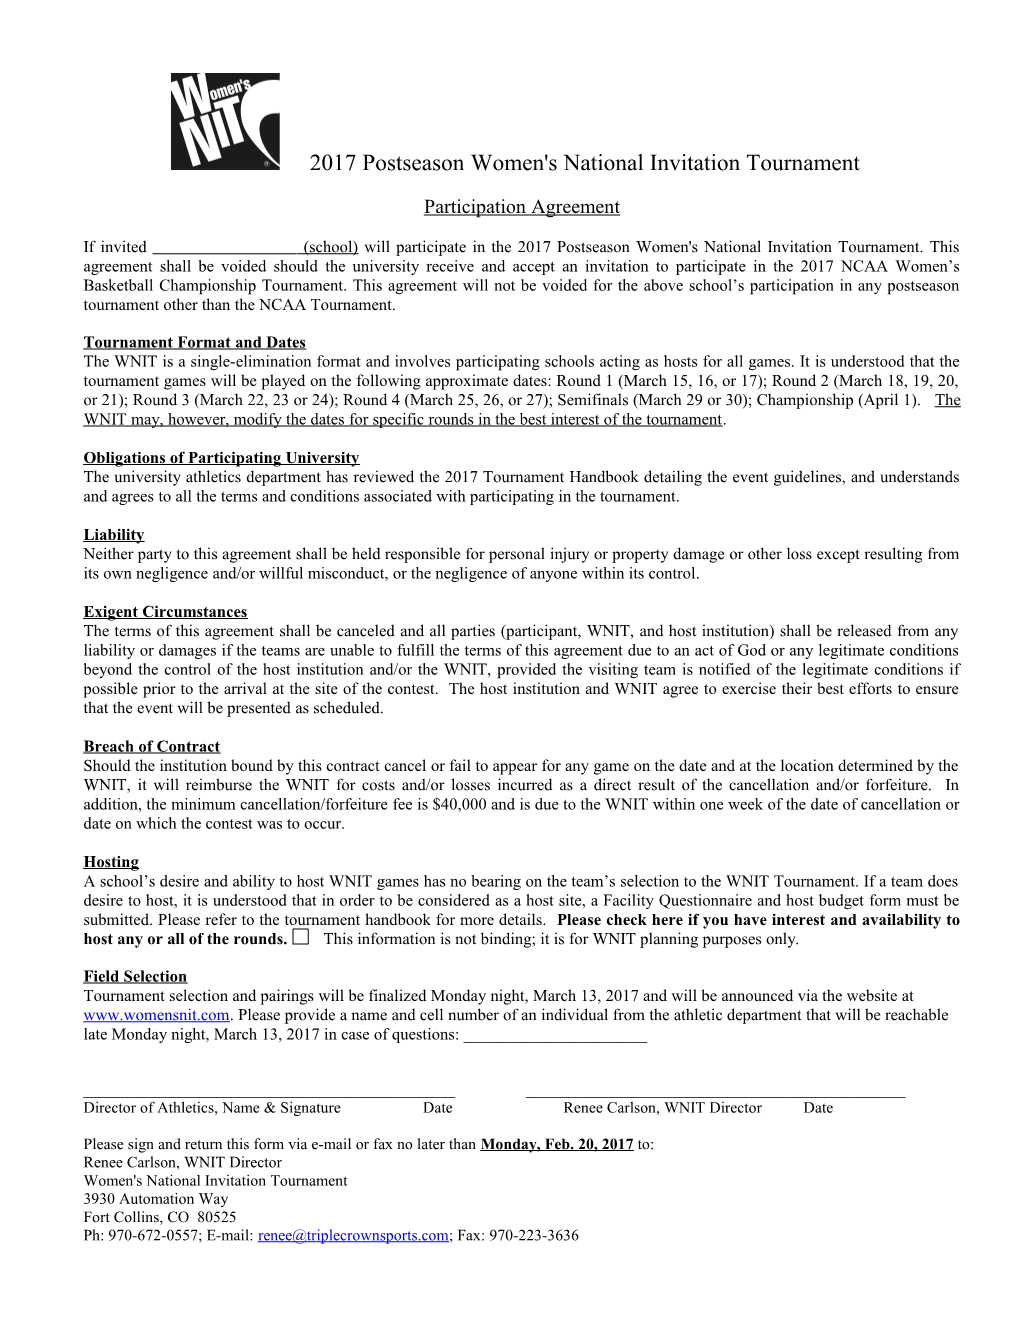 2003 Postseason Women's National Invitation Tournament